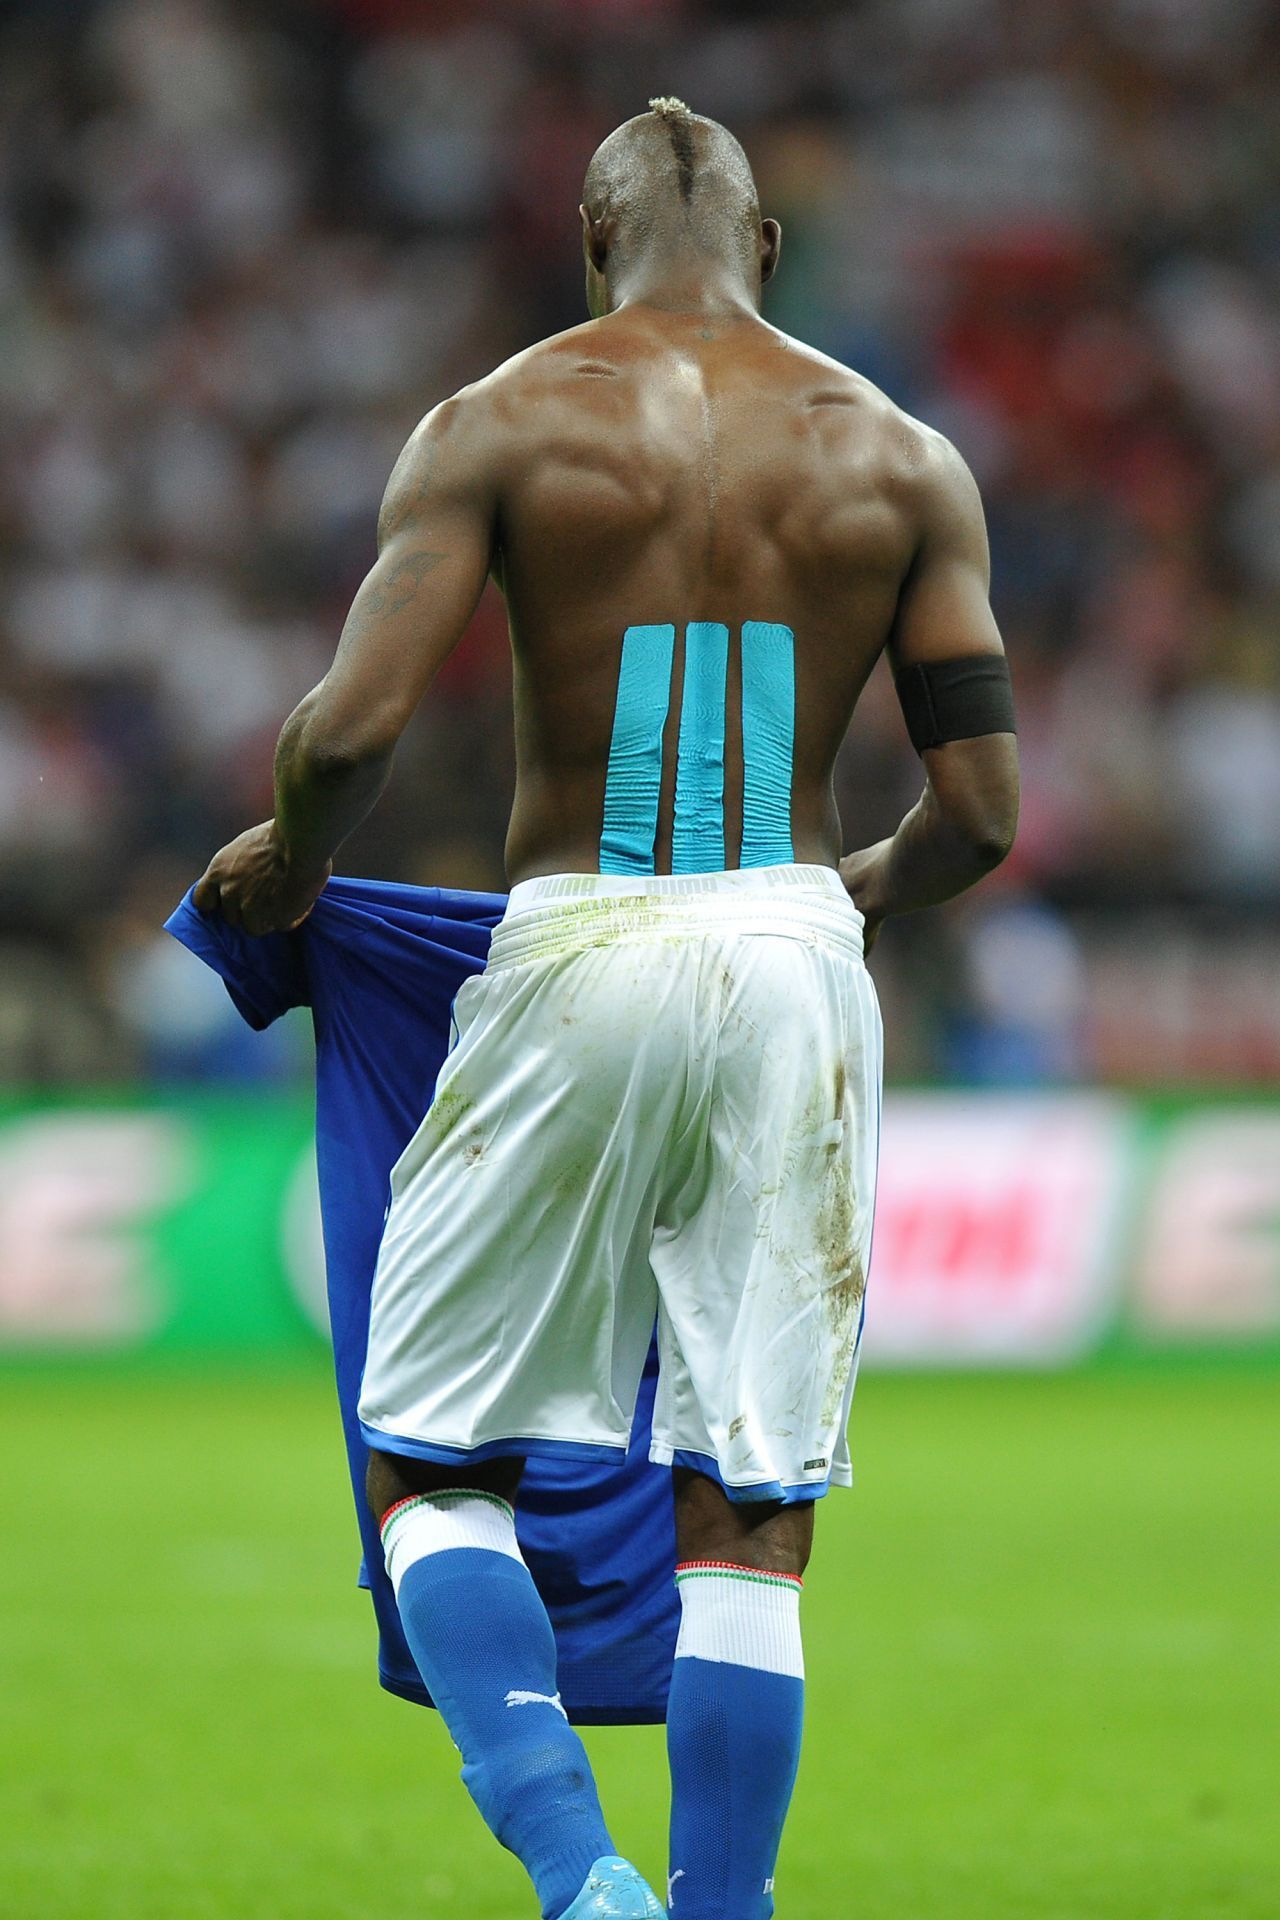 Der italienische Fußballspieler Mario Balotelli trug bei der EM 2012 türkises Tape für einen entspannten Rücken.